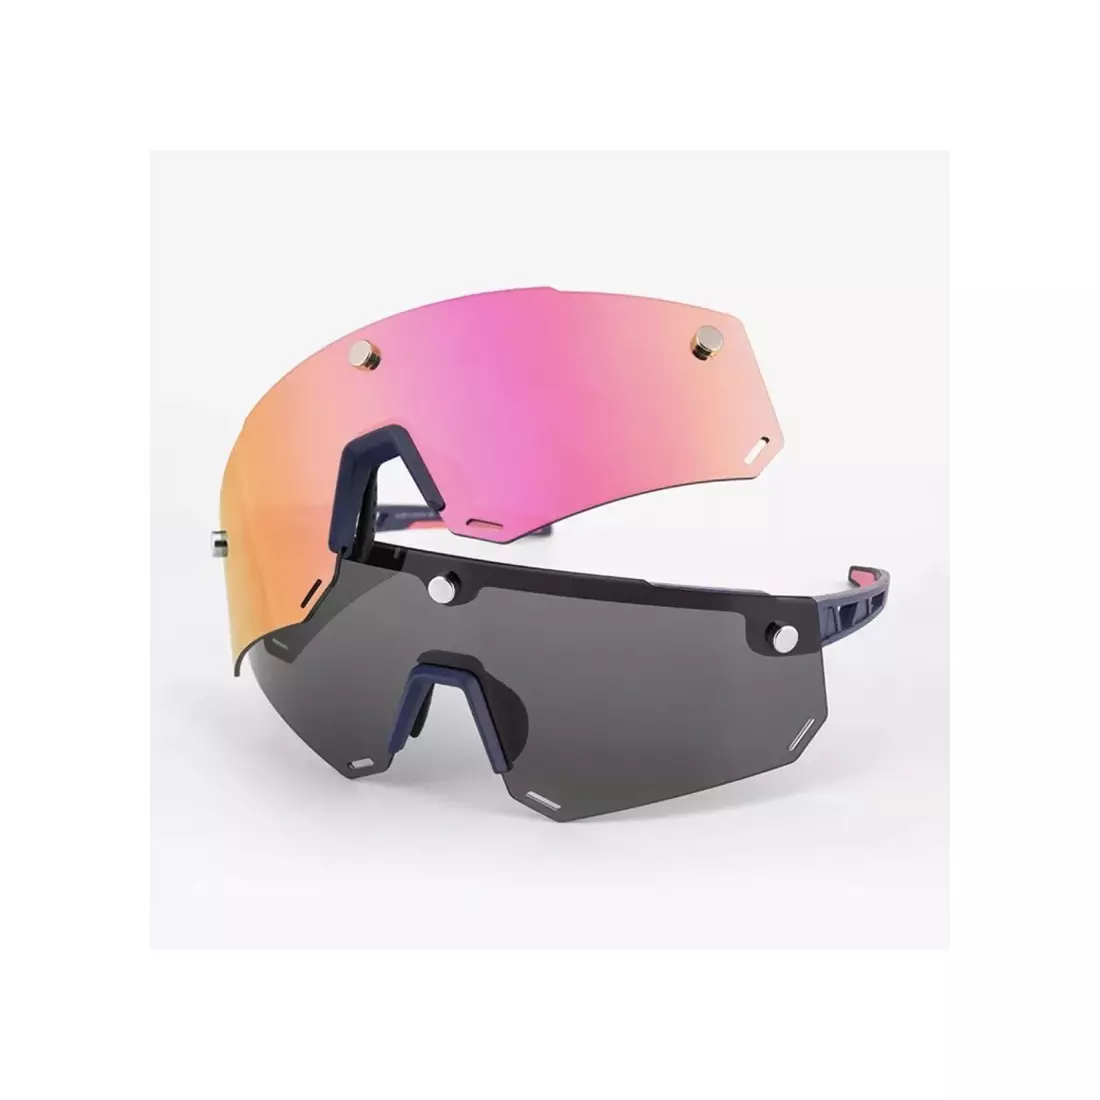 Rockbros SP213BK okulary rowerowe / sportowe z polaryzacją czarne 